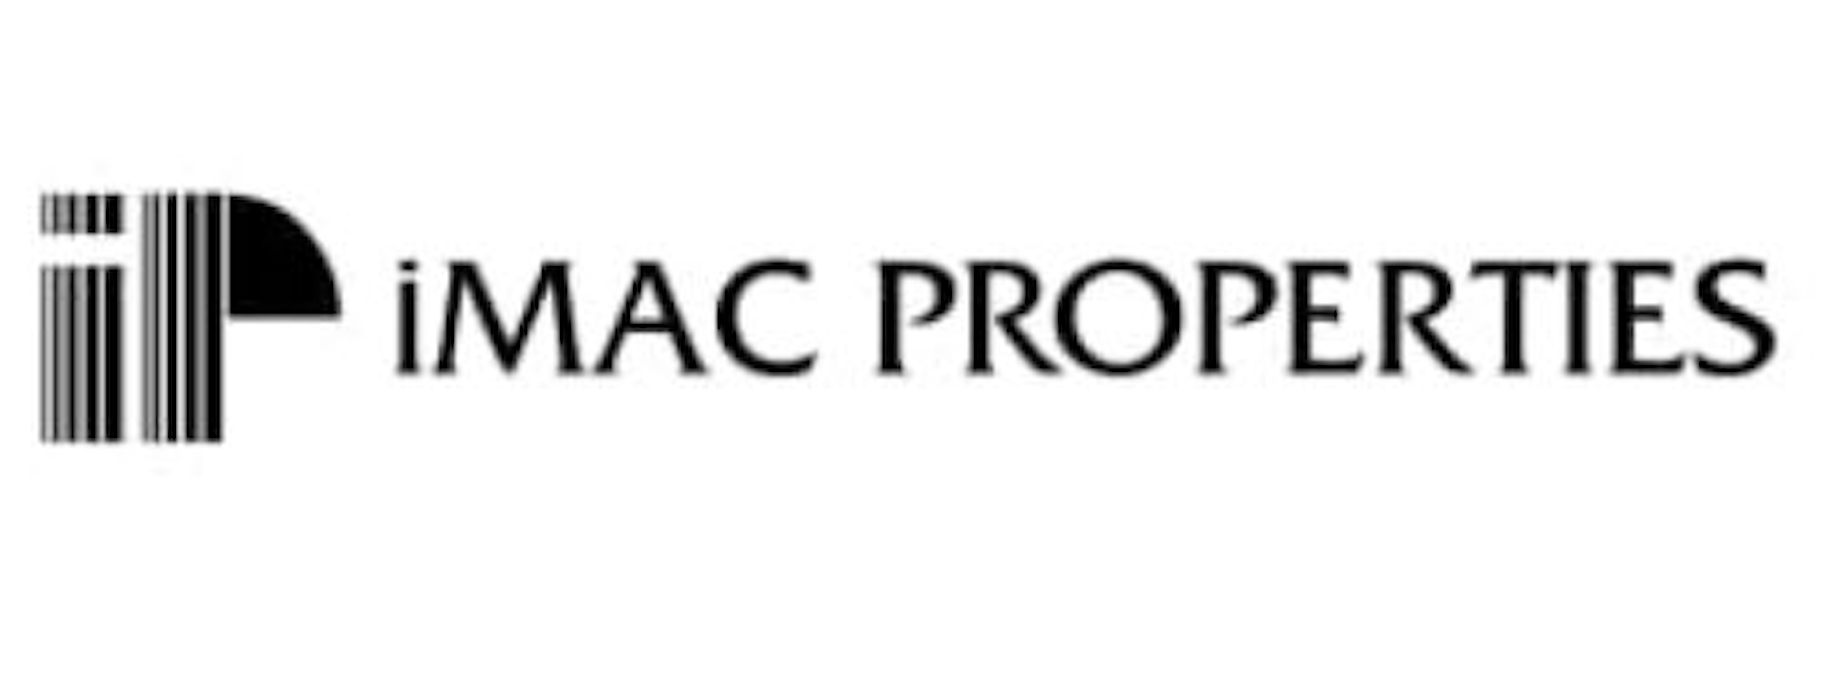 Imac Properties Real Estate